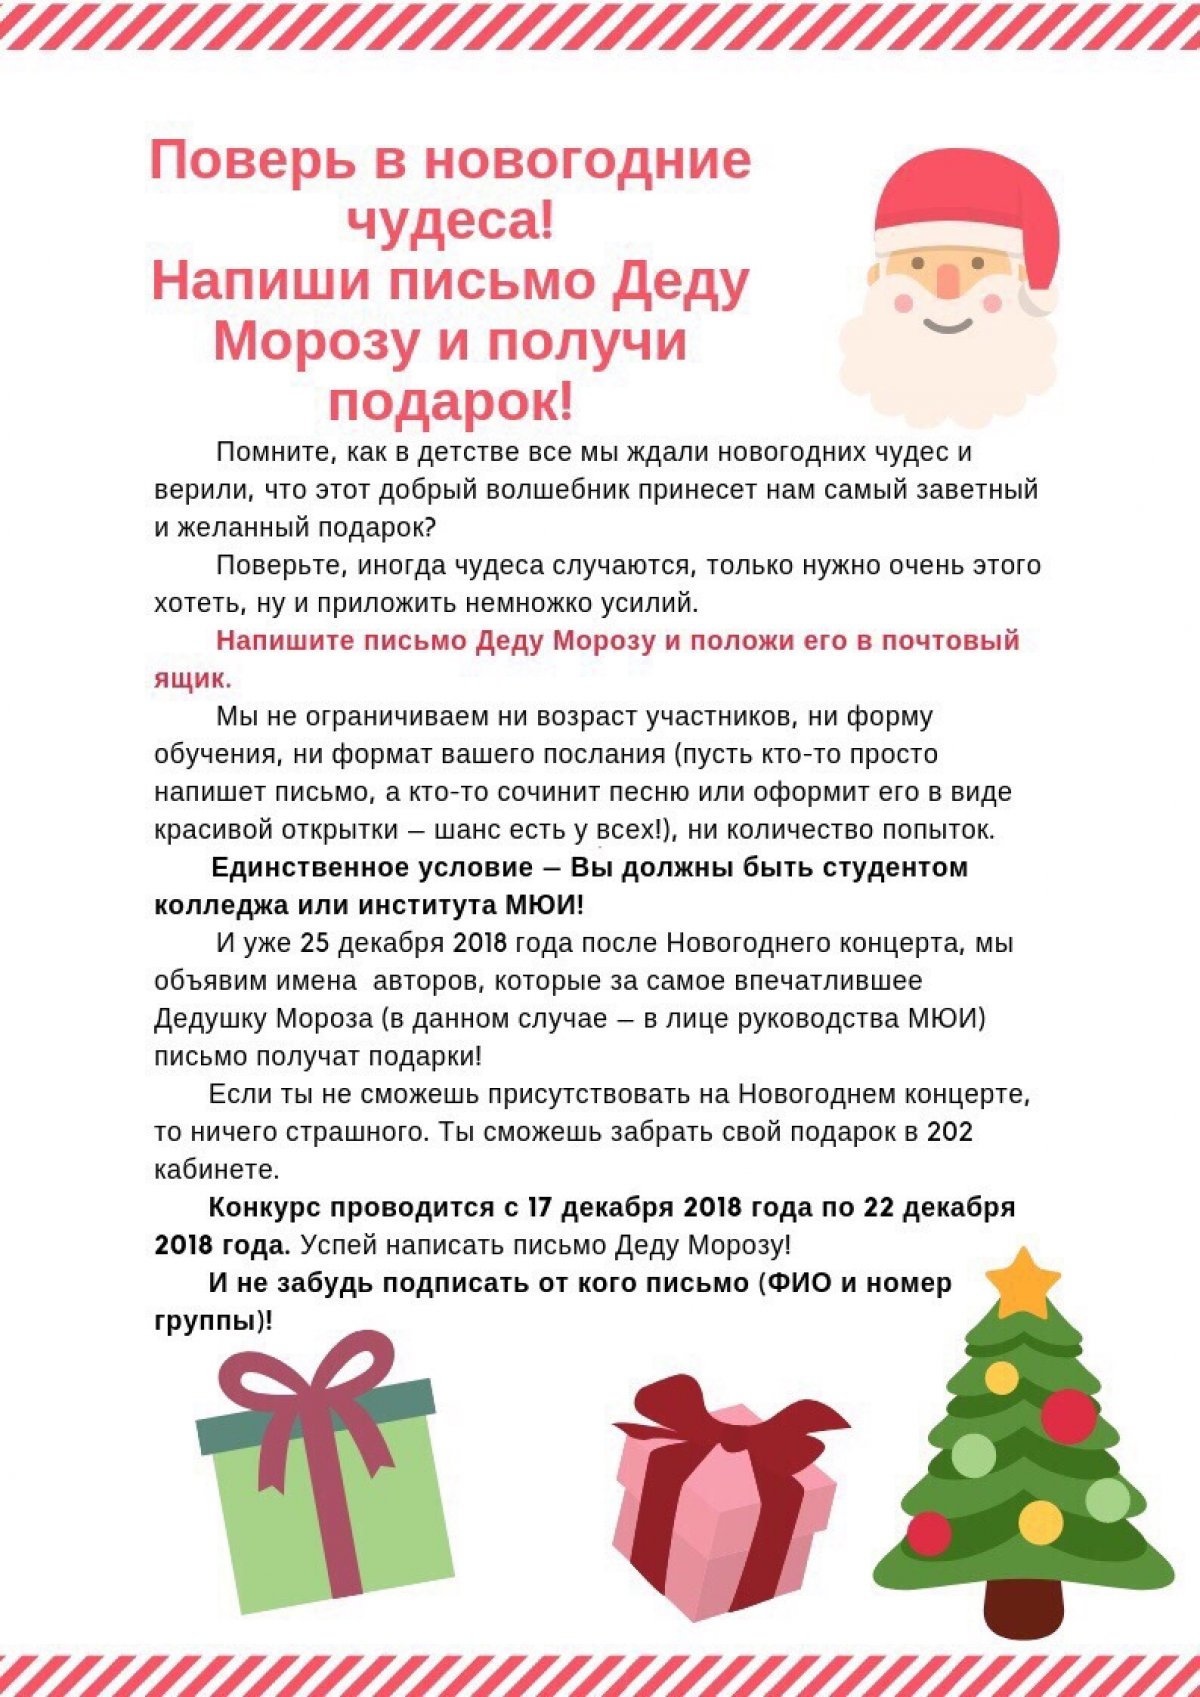 С 17 по 22 декабря 2018 года в МЮИ проходил конкурс на лучшее новогоднее письмо Деду Морозу!🎅🏻